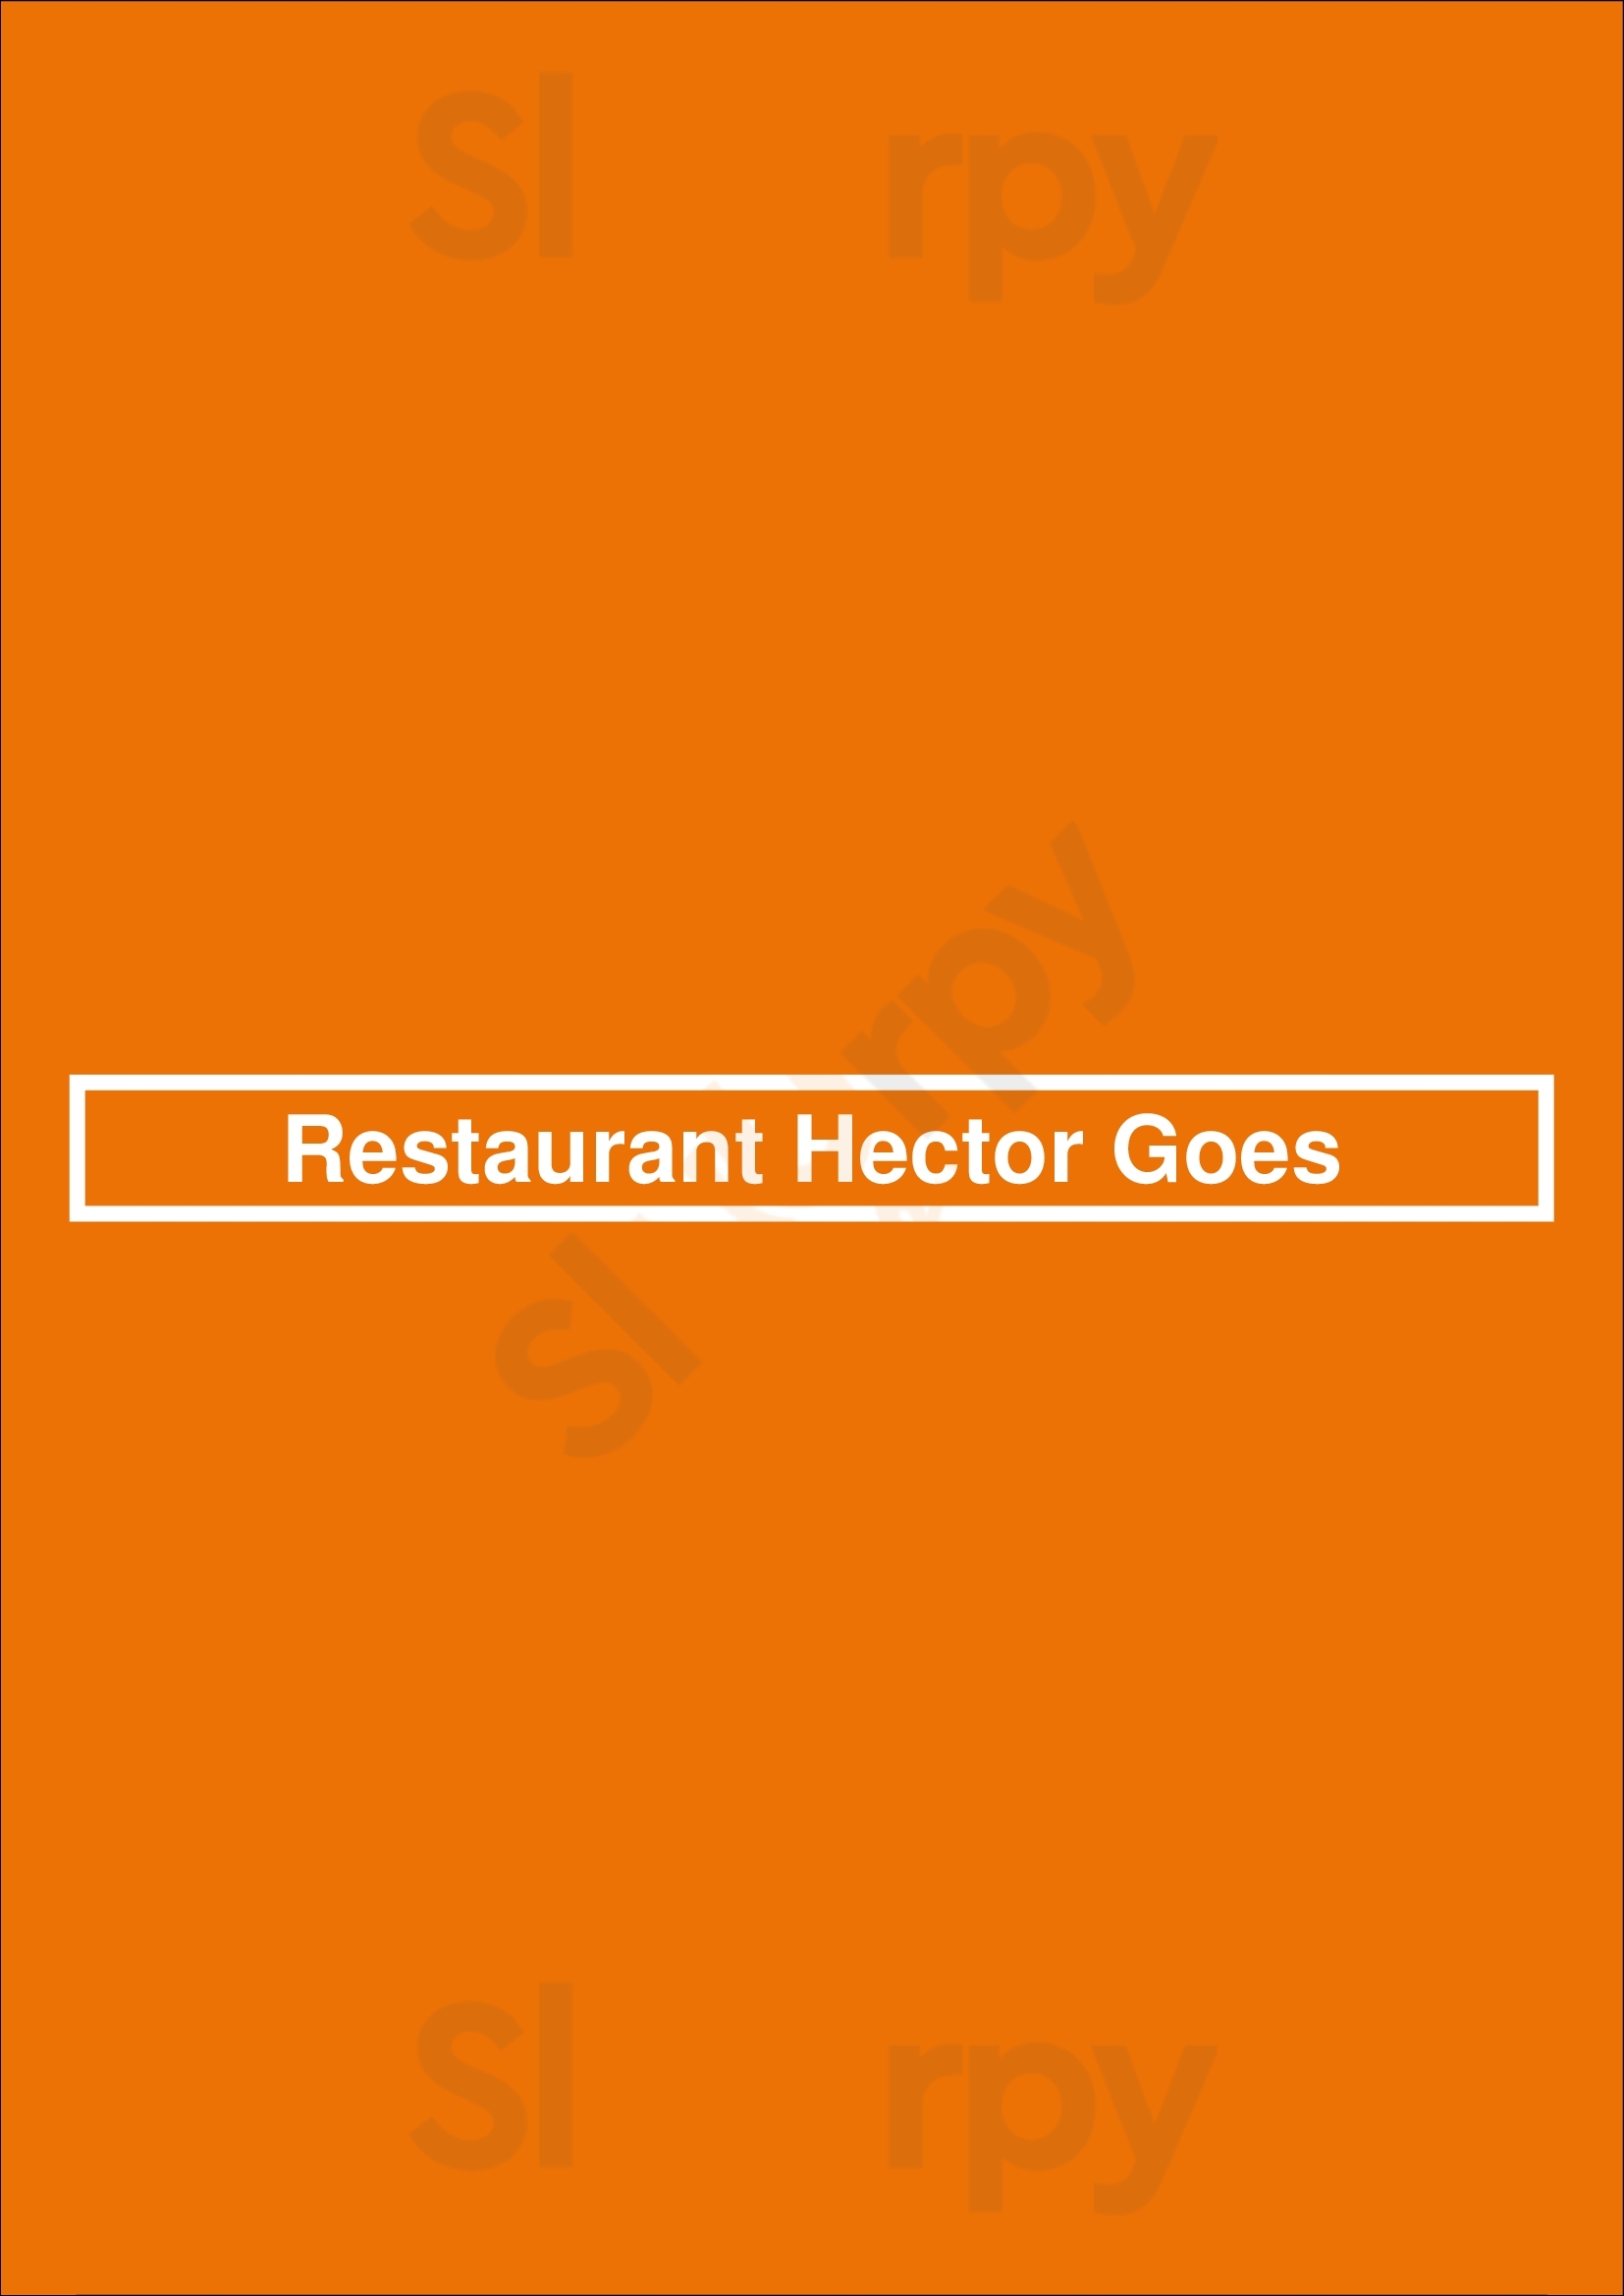 Restaurant Hector Goes Goes Menu - 1